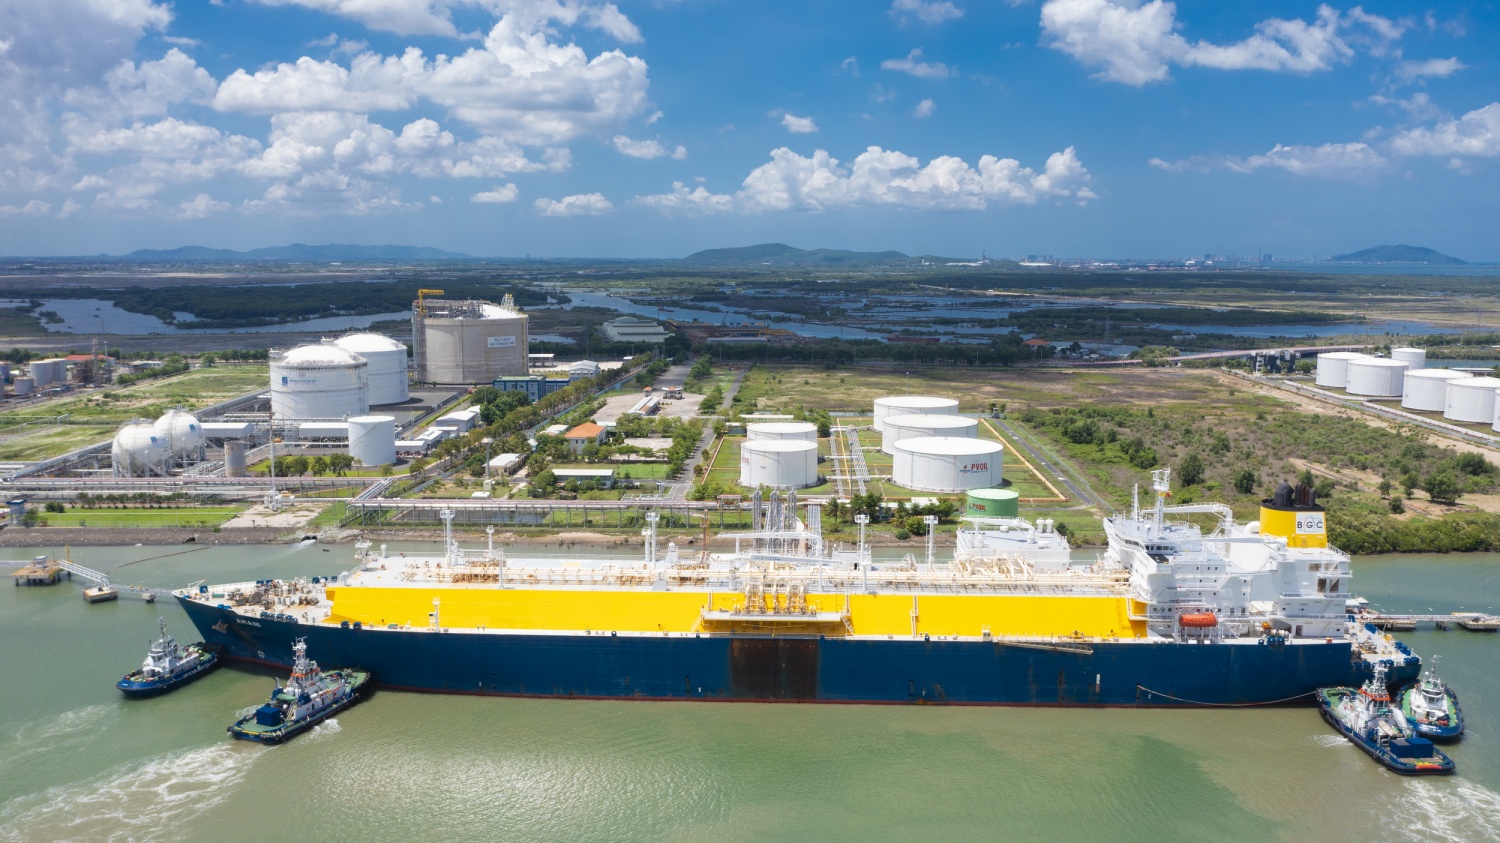 PV GAS là doanh nghiệp đầu tiên và duy nhất đủ điều kiện xuất nhập khẩu LNG, đồng thời sở hữu hệ thống hạ tầng kho cảng LNG hoàn chỉnh tại Việt Nam